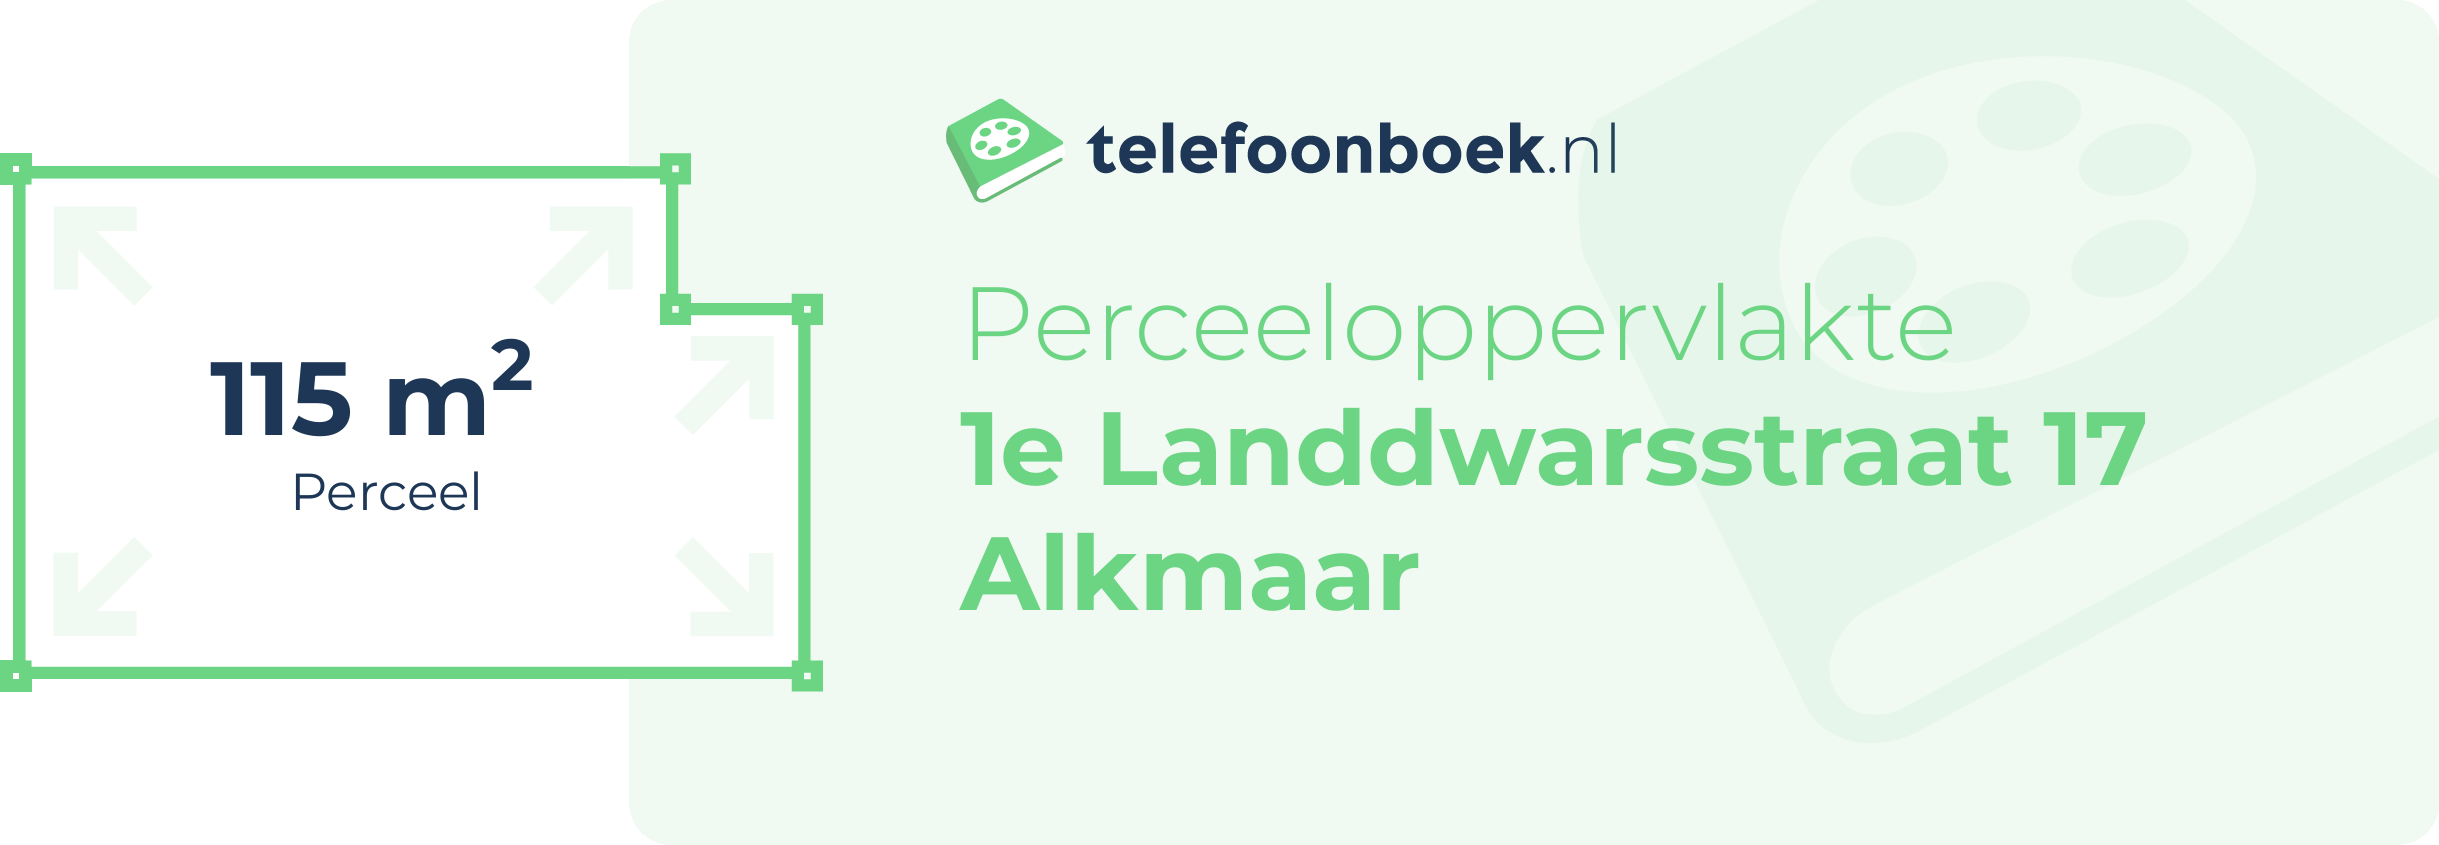 Perceeloppervlakte 1e Landdwarsstraat 17 Alkmaar